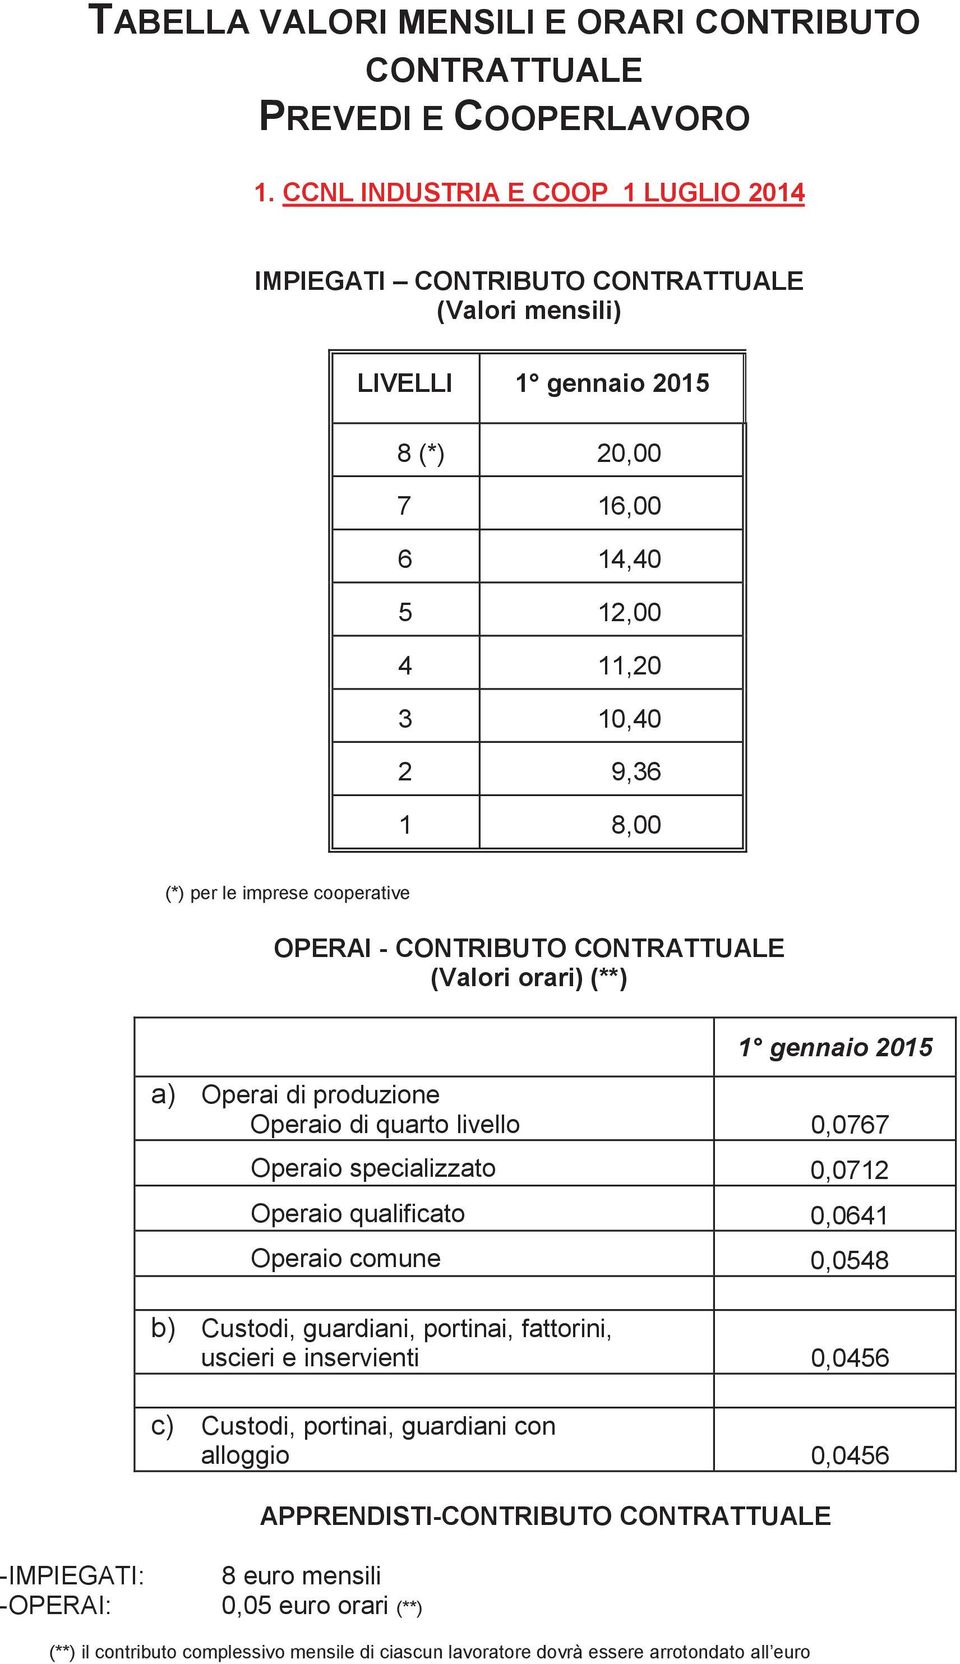 cooperative OPERAI - CONTRIBUTO CONTRATTUALE (Valori orari) (**) 1 gennaio 2015 a) Operai di produzione Operaio di quarto livello 0,0767 Operaio specializzato 0,0712 Operaio qualificato 0,0641